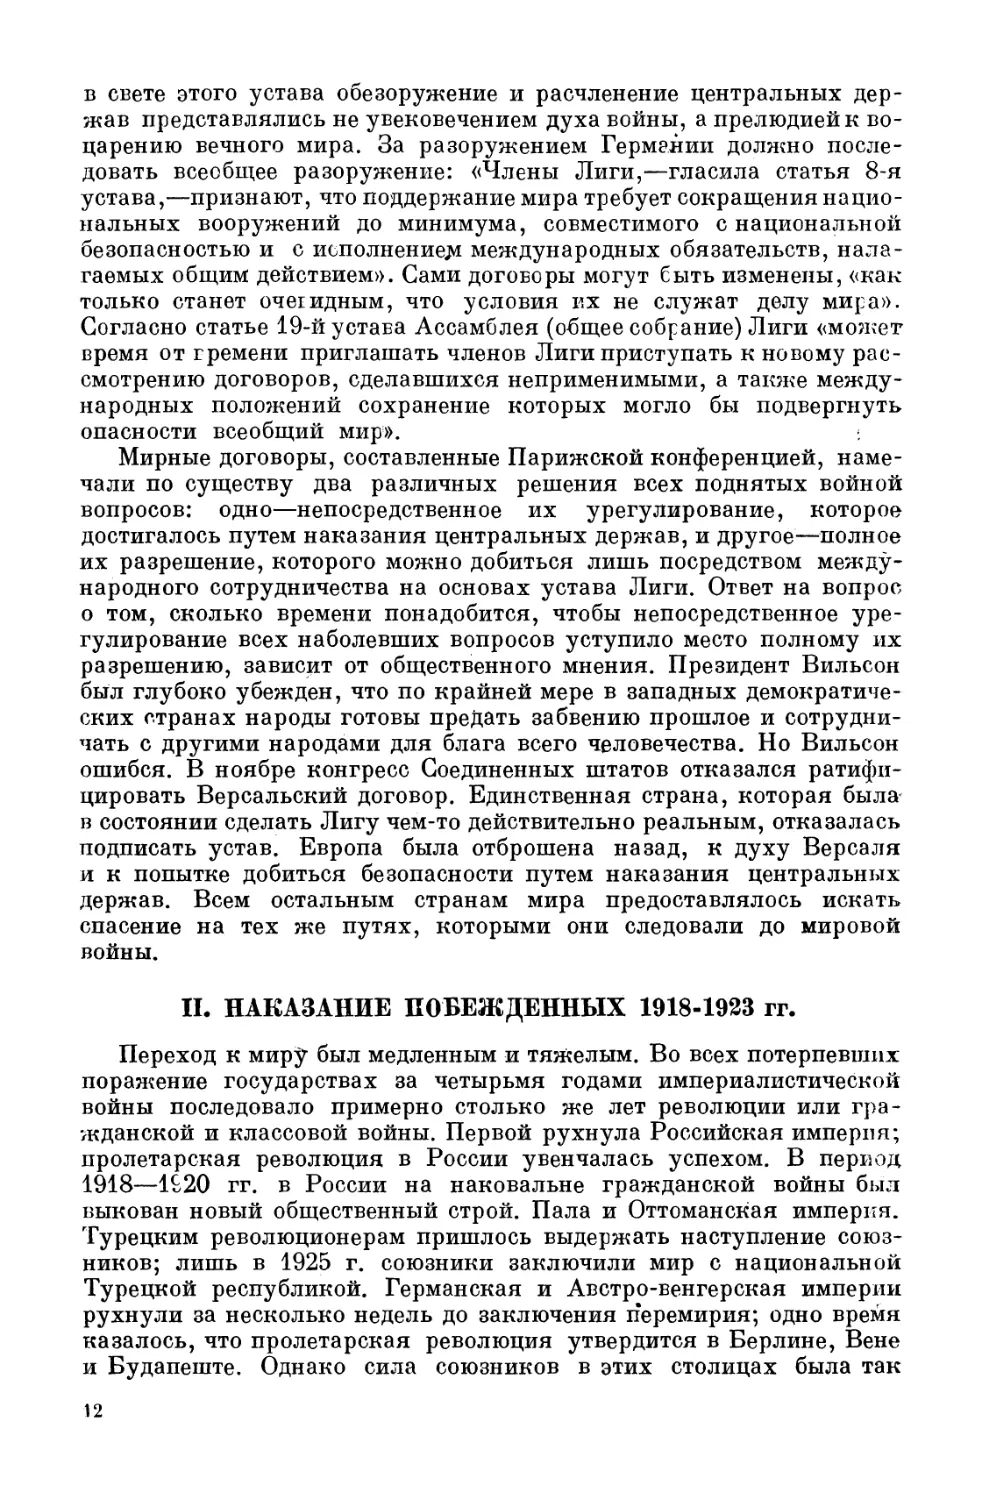 Наказание побеждённых. 1918—1923 гг